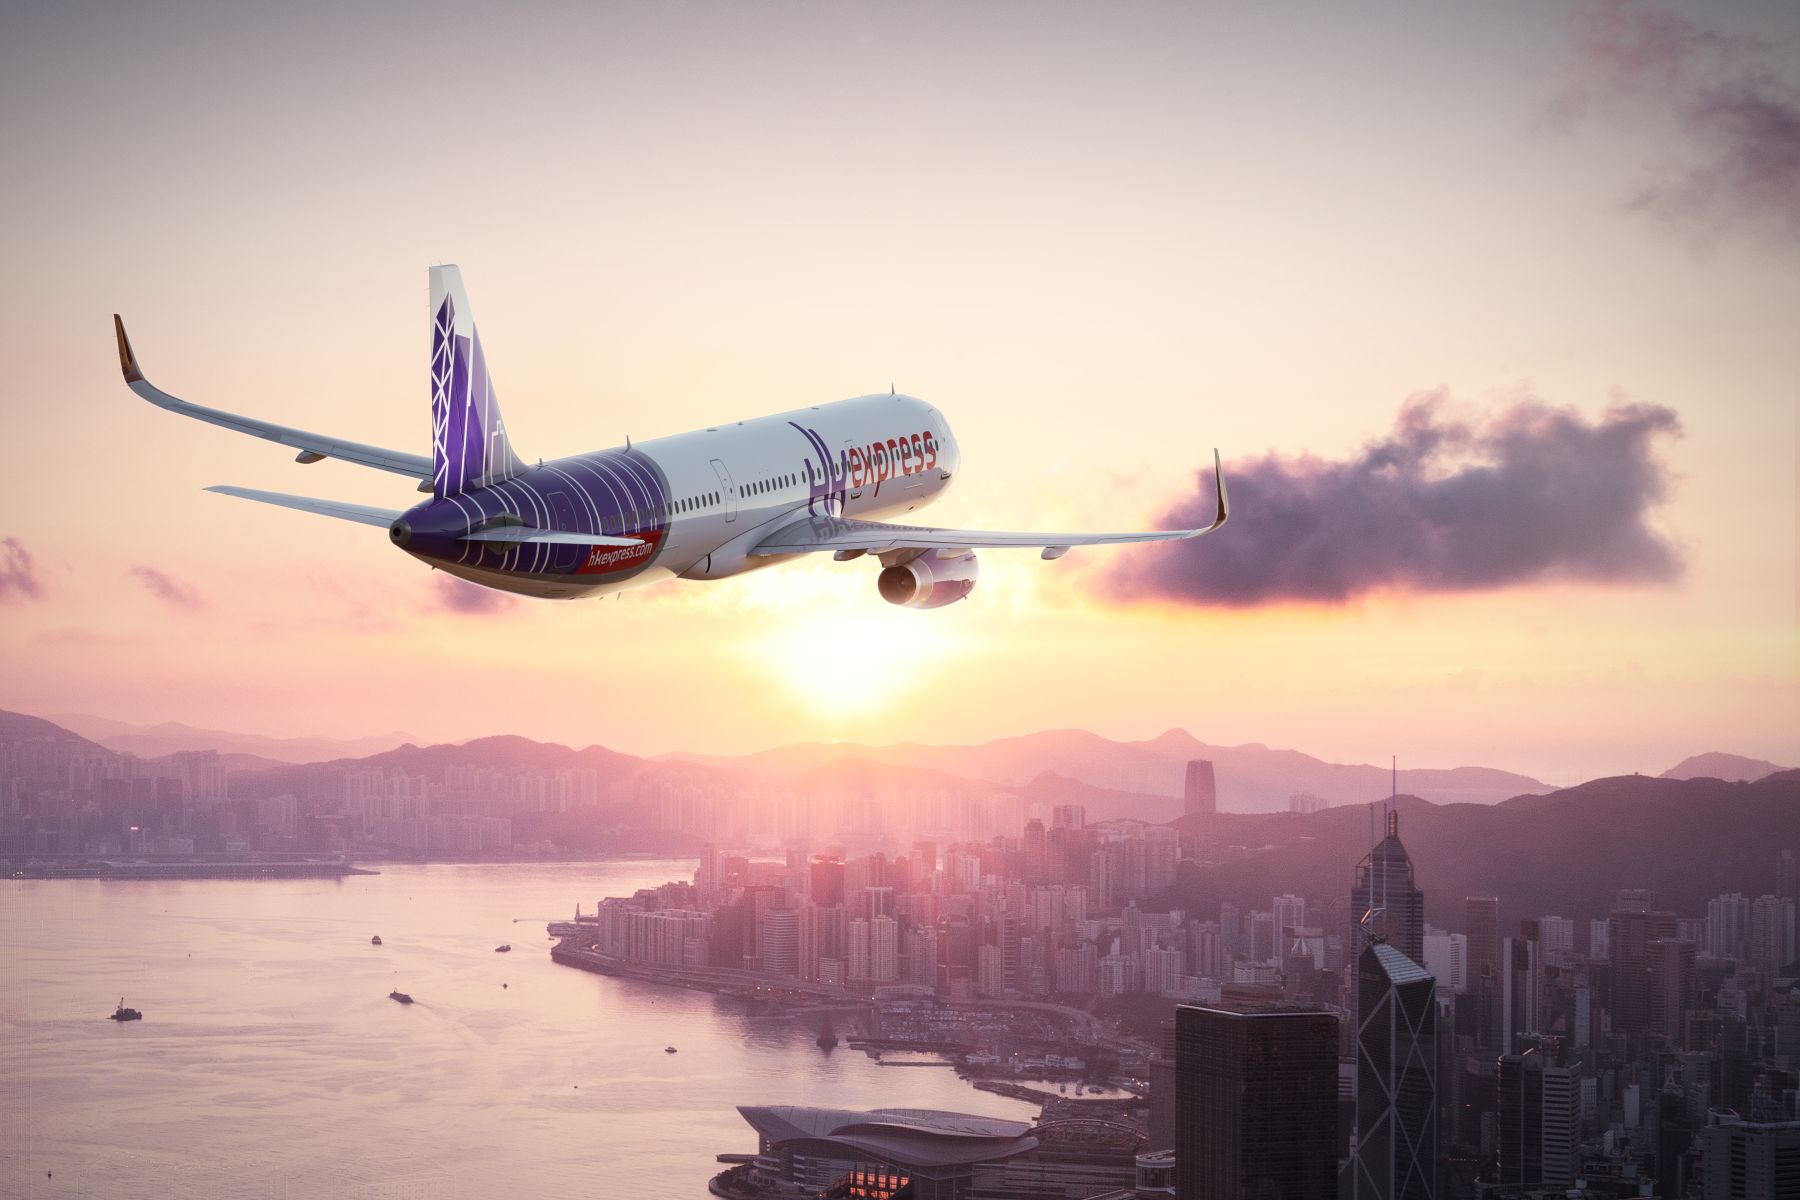  香港快运航空宣布开通新航线 接载旅客直飞新加坡